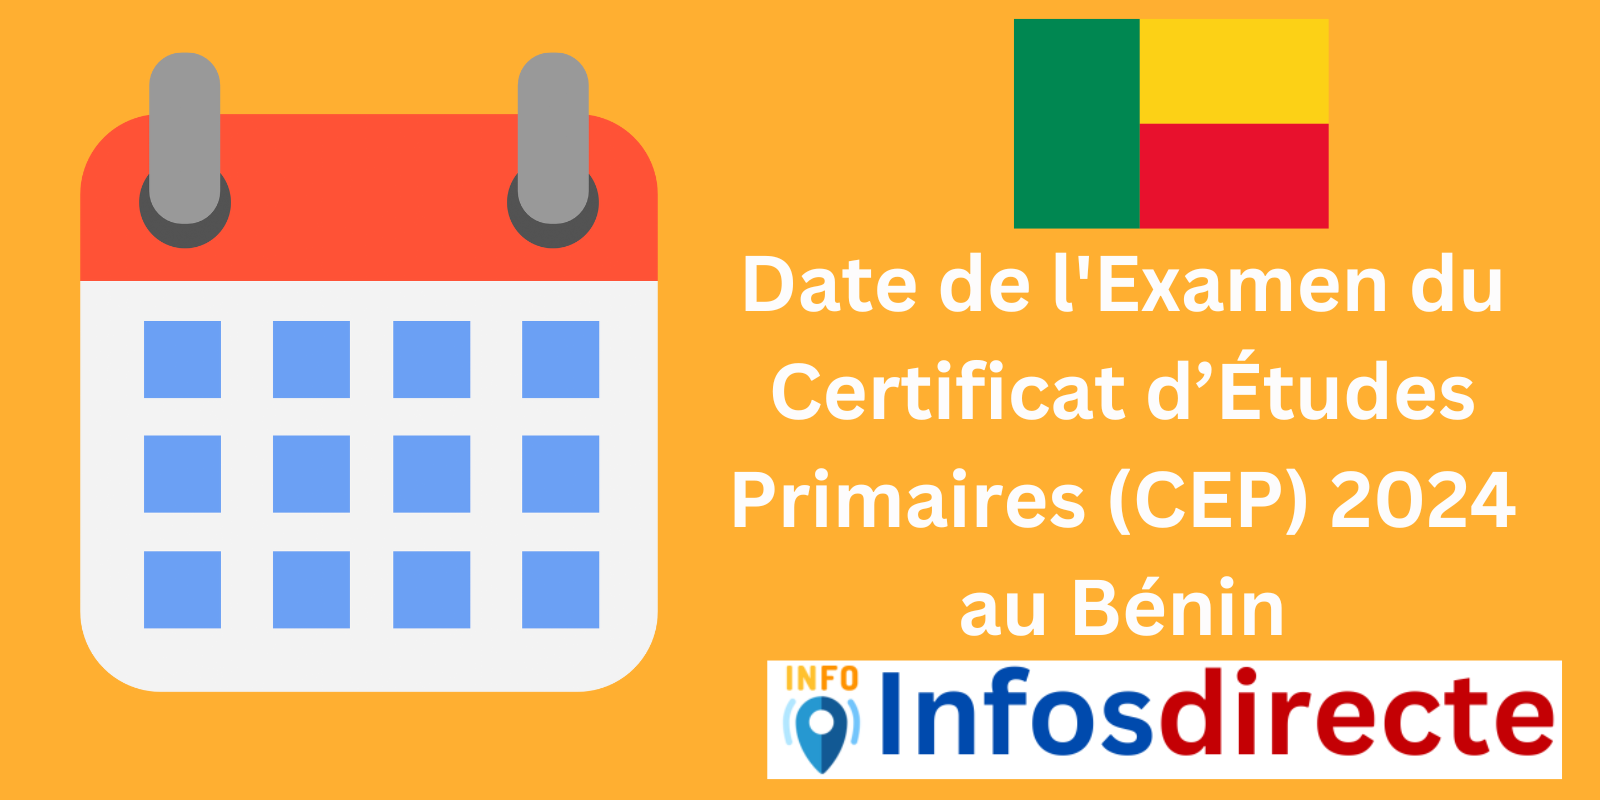 Date de l'Examen du Certificat d’Études Primaires (CEP) 2024 au Bénin